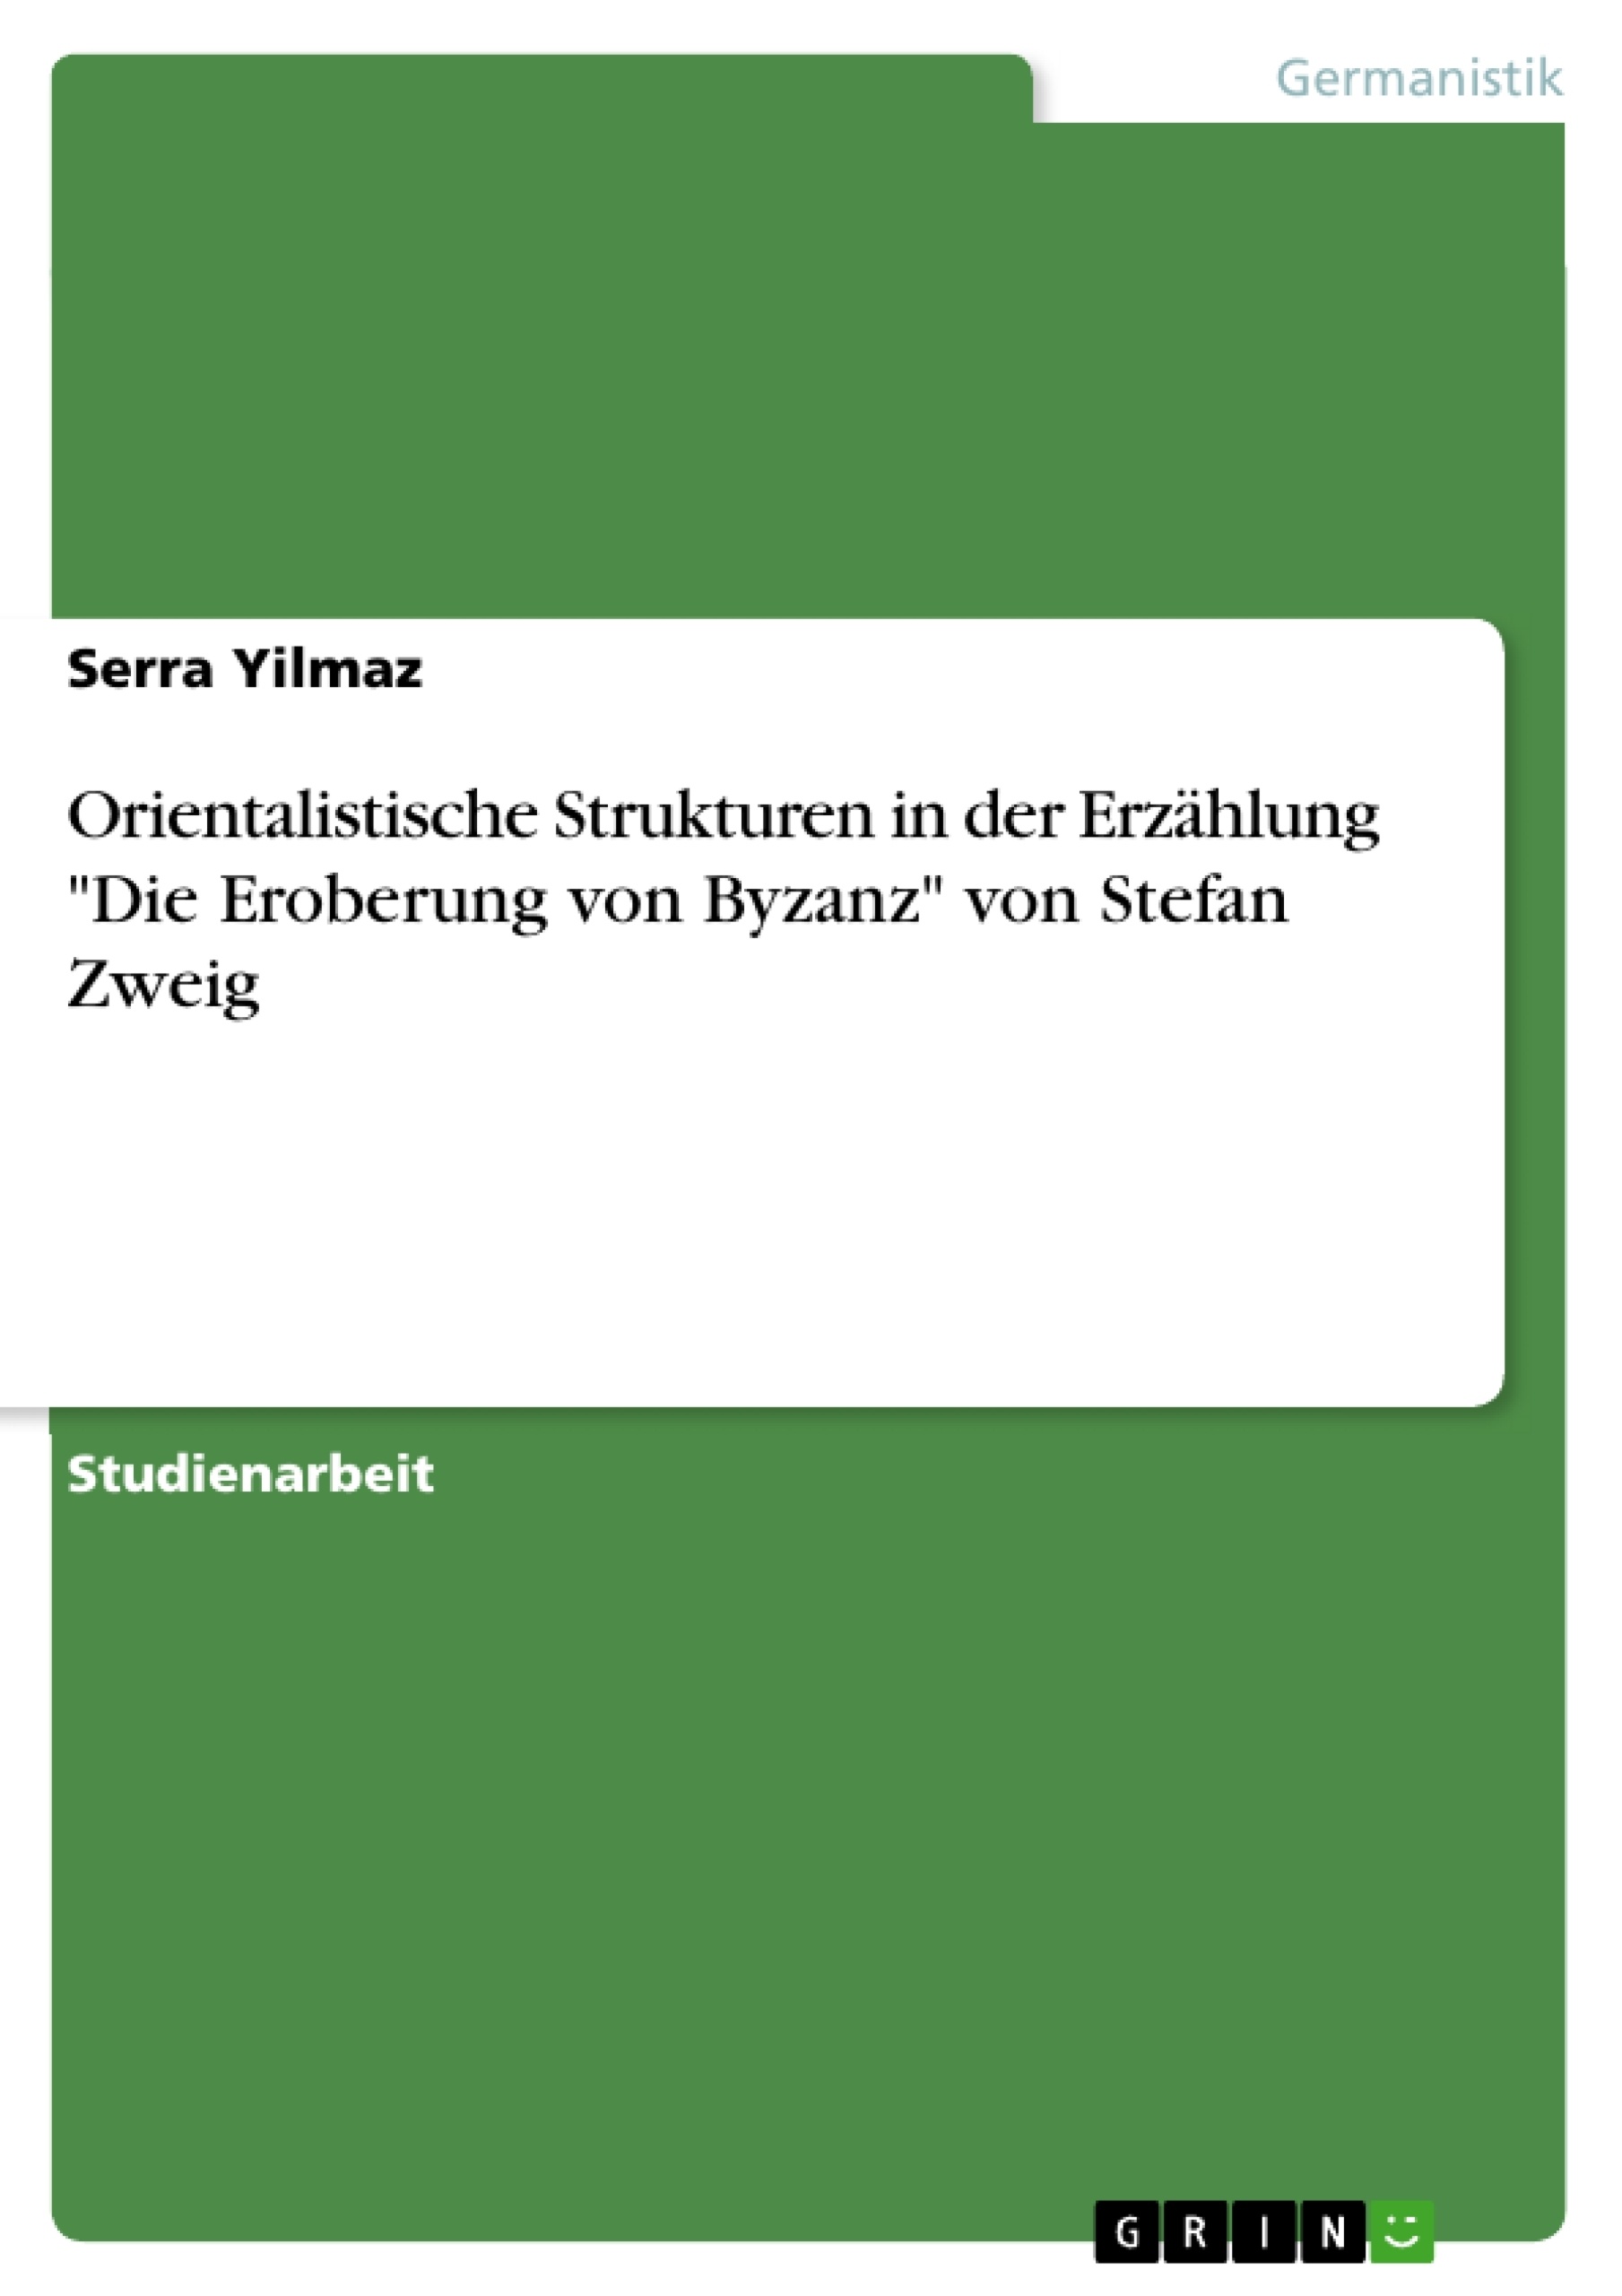 Titre: Orientalistische Strukturen in der Erzählung "Die Eroberung von Byzanz" von Stefan Zweig